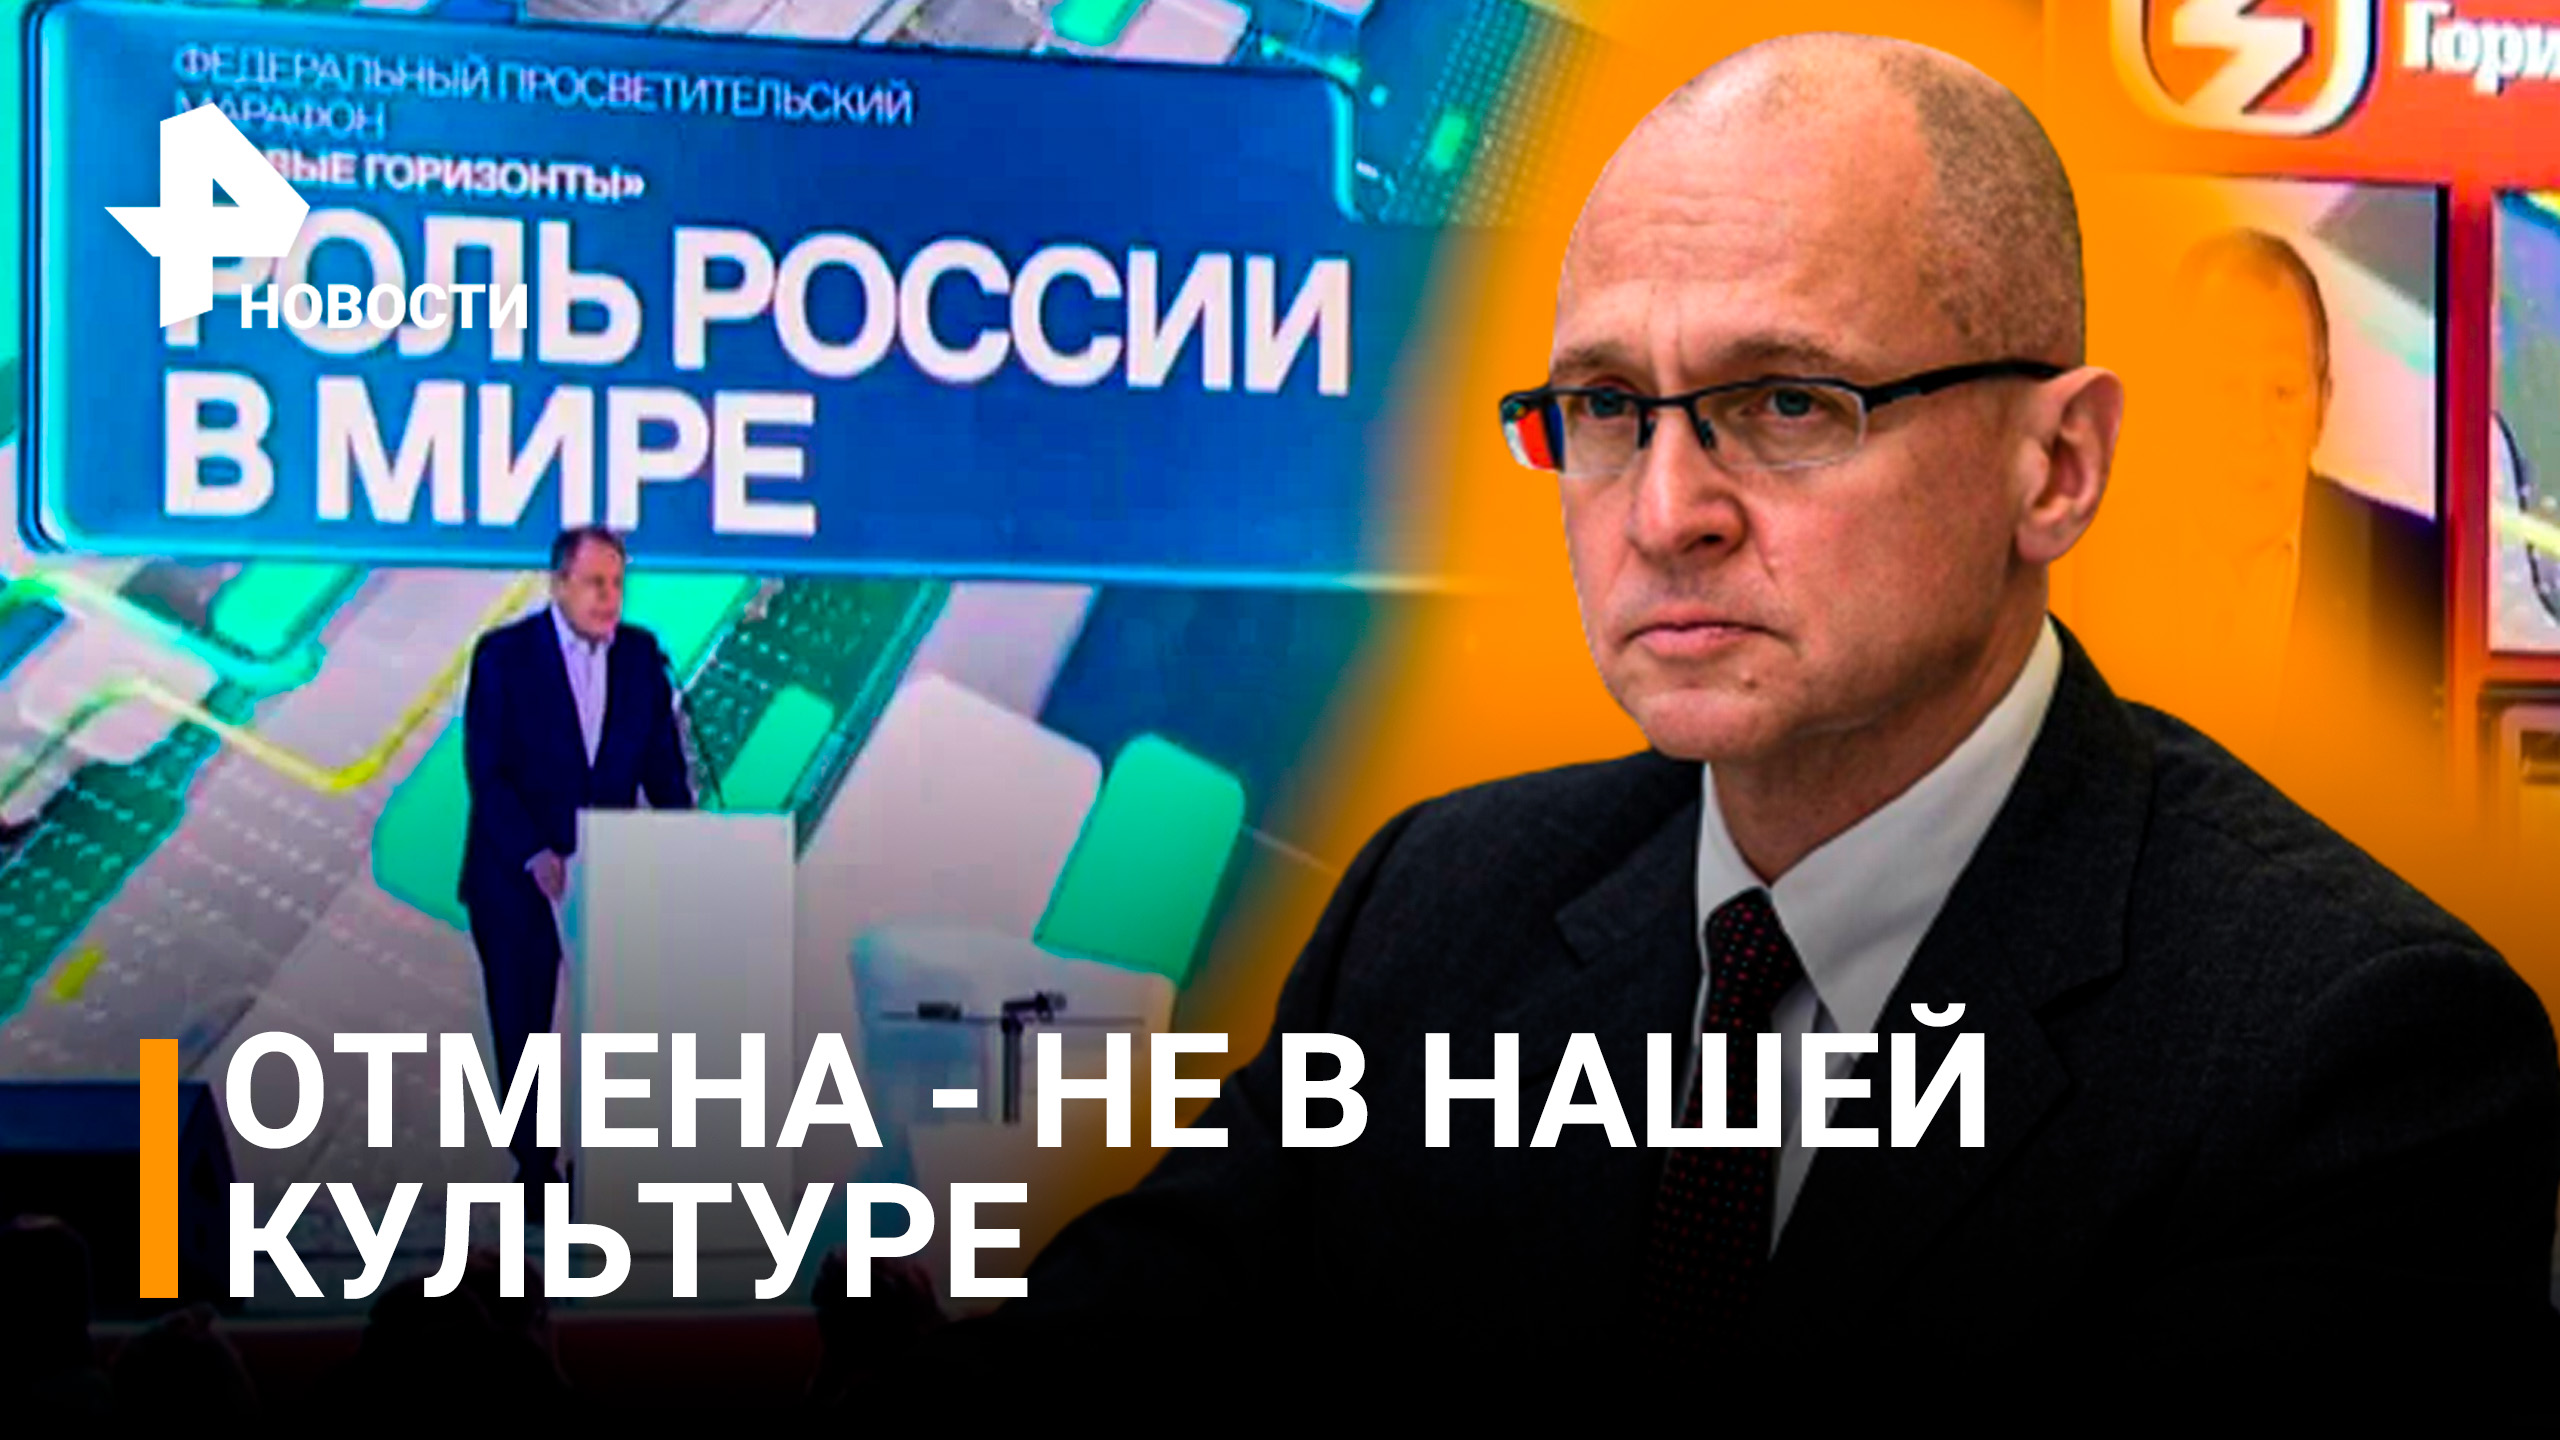 Кириенко заявил, что Россия предложит для всех культуру уважения / РЕН Новости